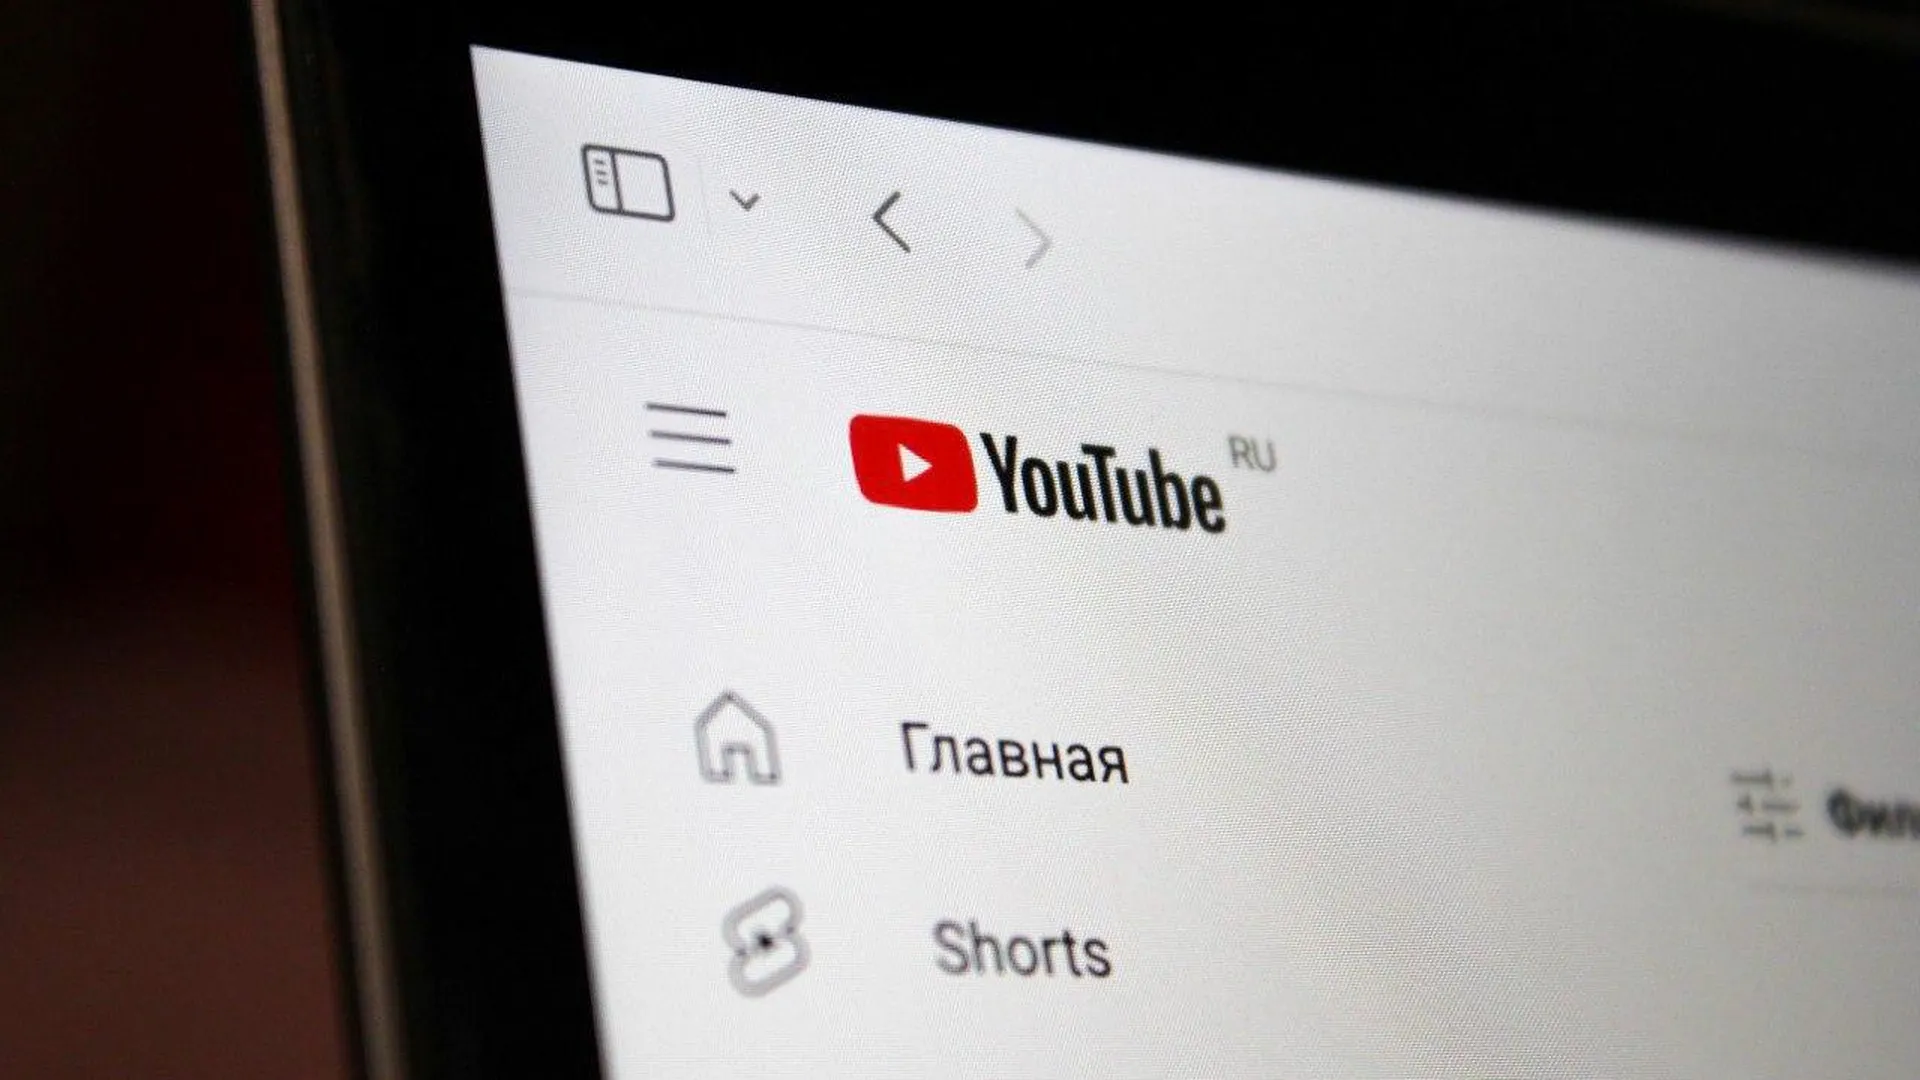 Депутат Горелкин: блокировка YouTube принесет больше вреда, чем пользы